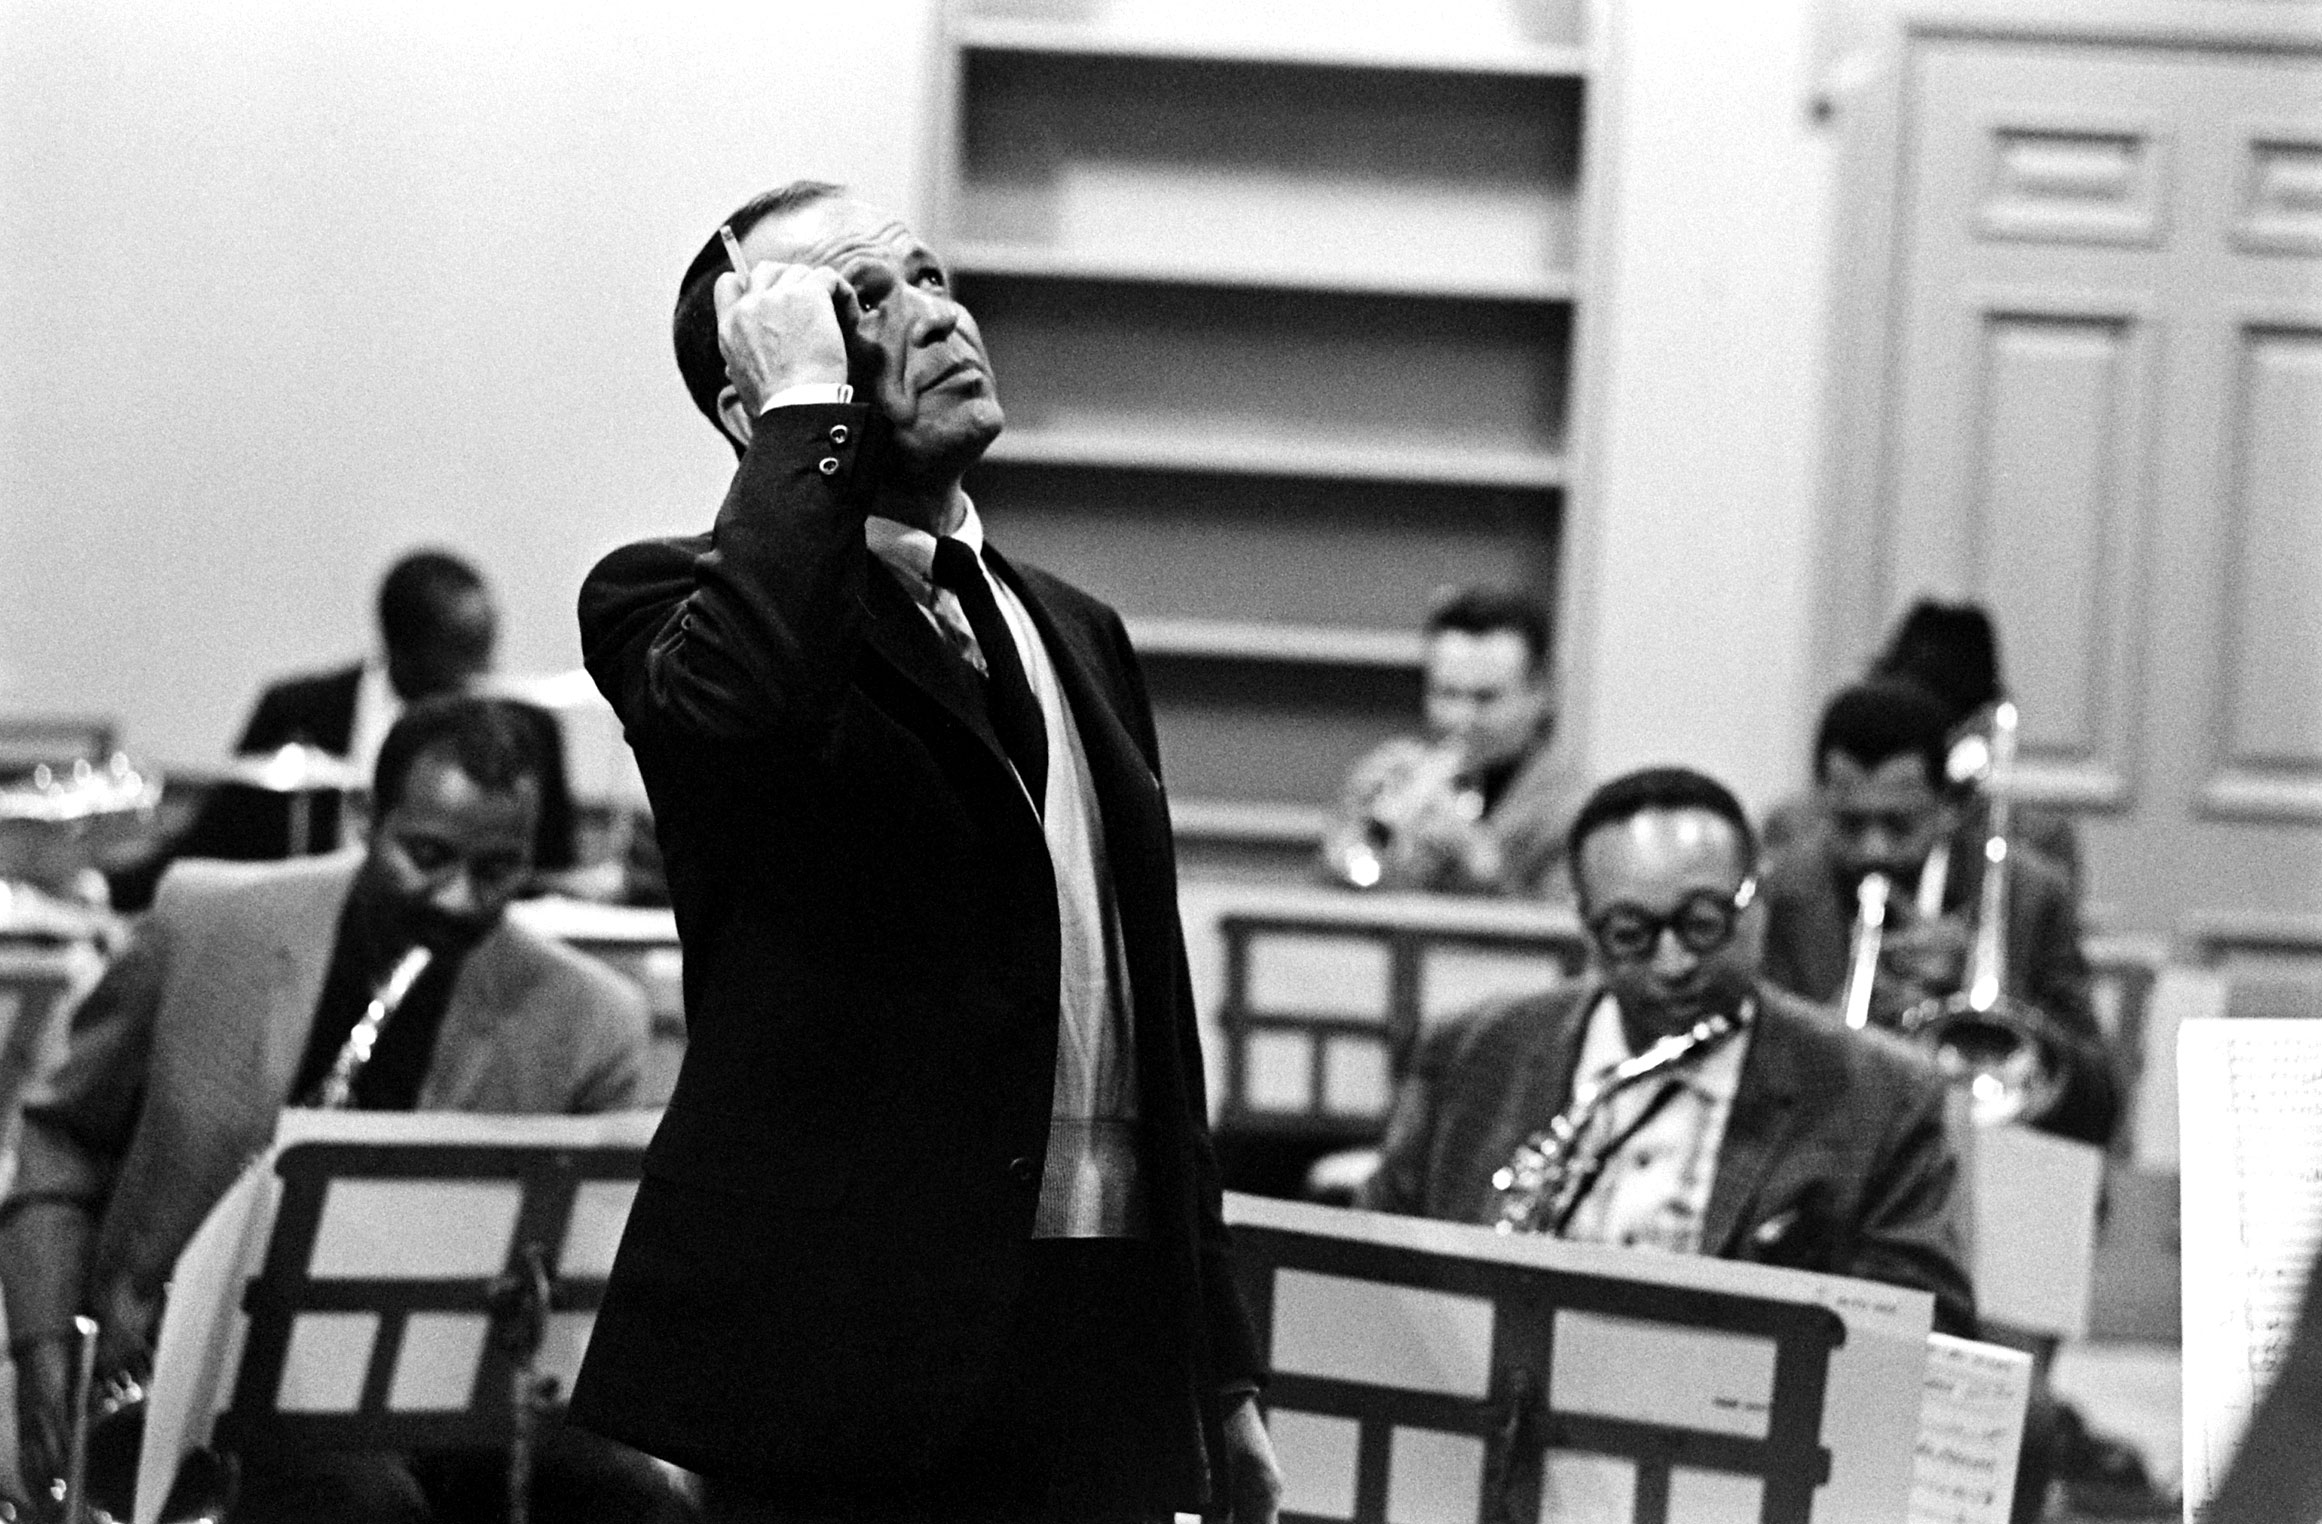 Frank Sinatra rehearsing, 1965